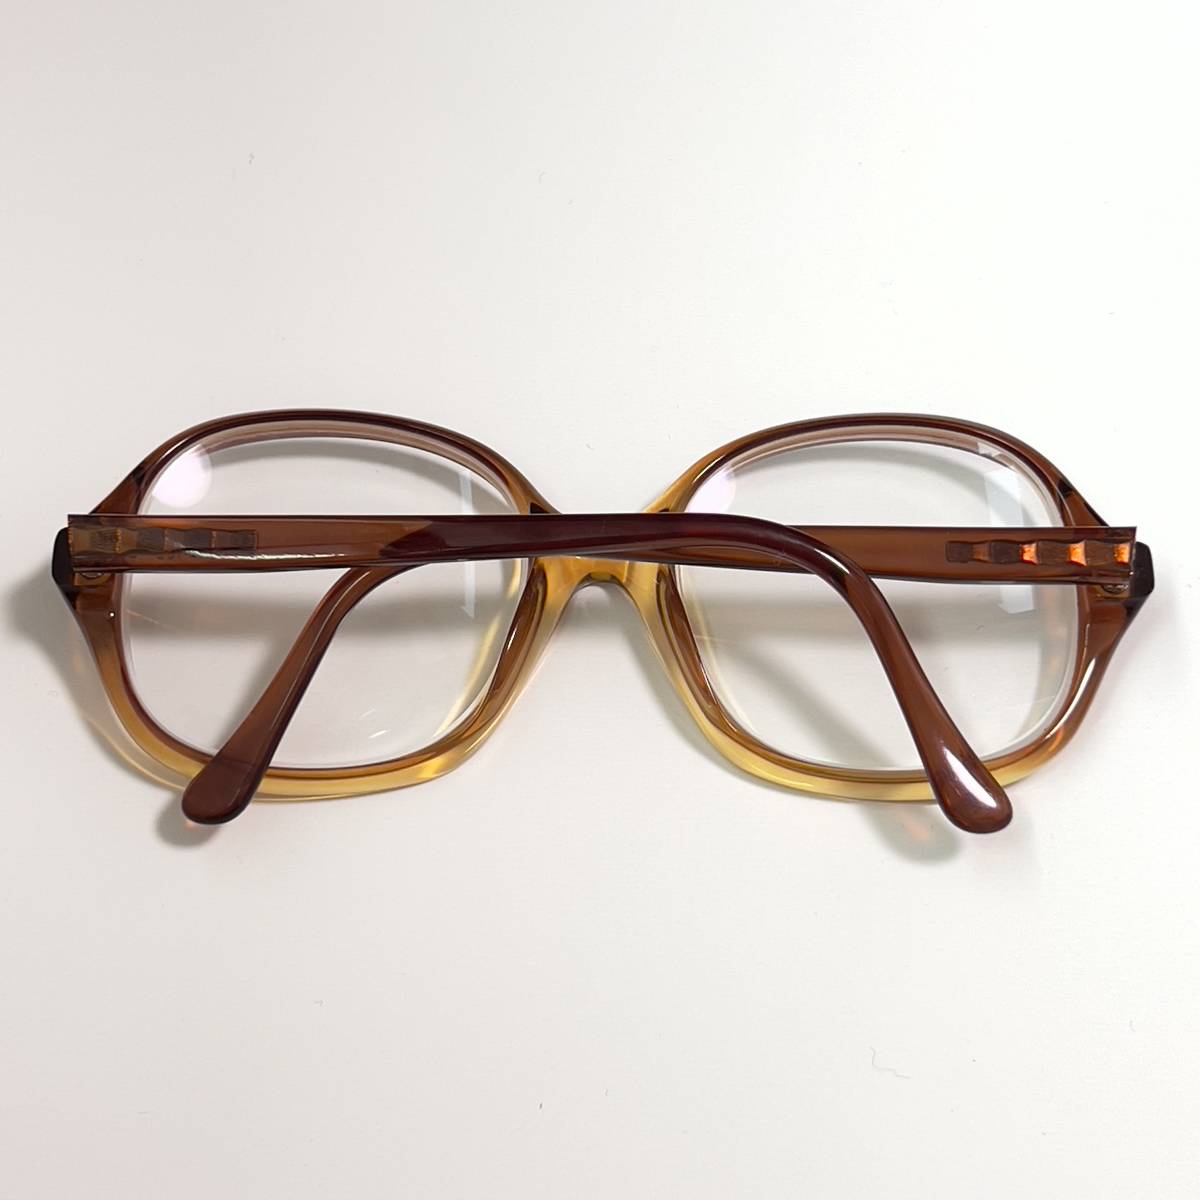 ◆MARWITZ マルヴィッツ ヴィンテージ 眼鏡フレーム アイウェア サングラス メガネ クリア グラデーション ドイツ製 OLD_画像8